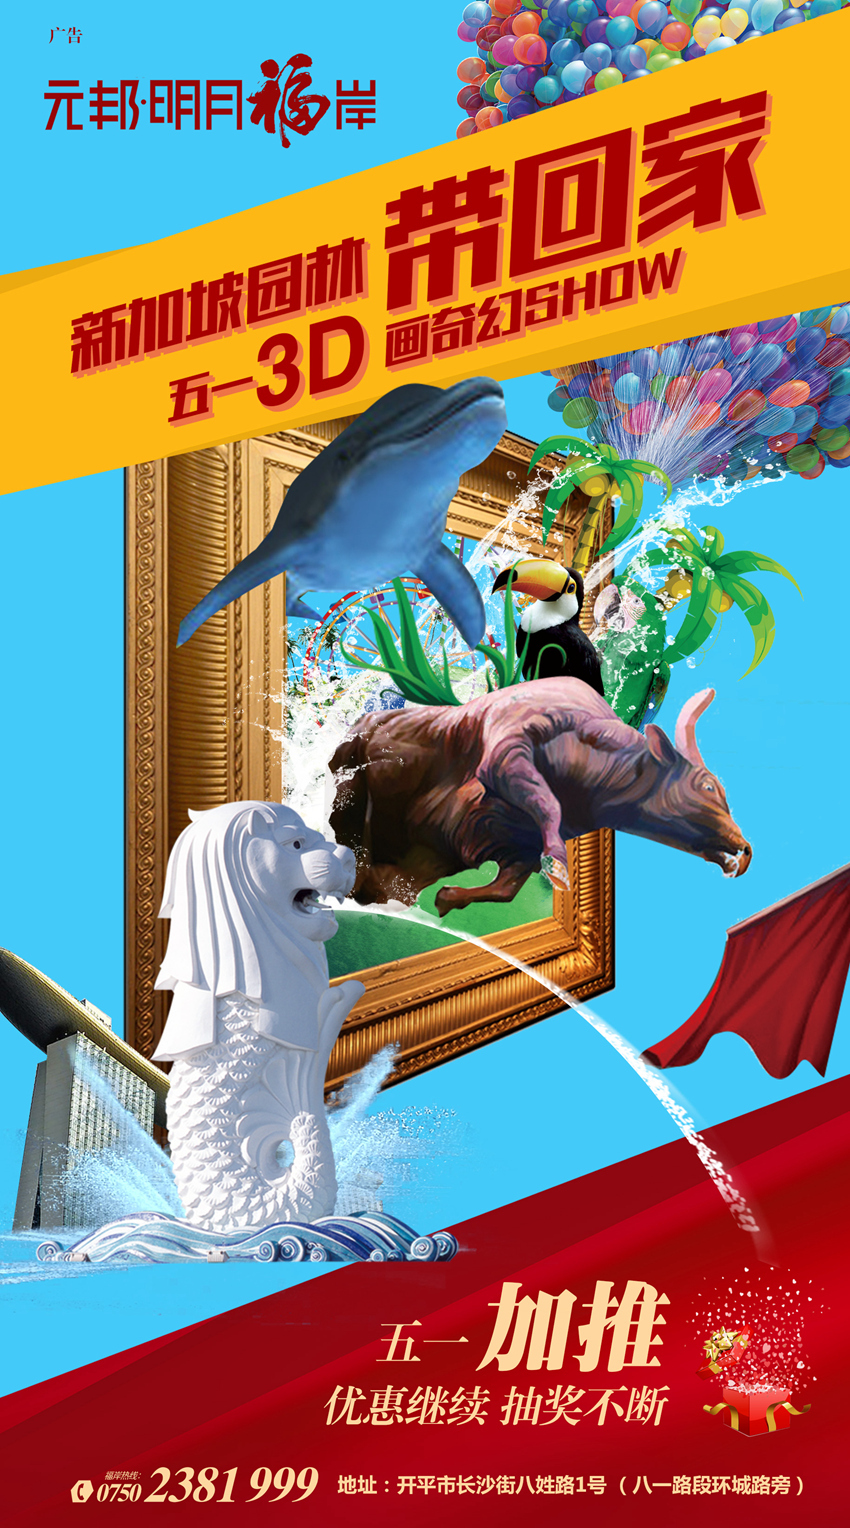 开平新城中心实用的亲民楼盘，五一期间举办3D画奇幻show